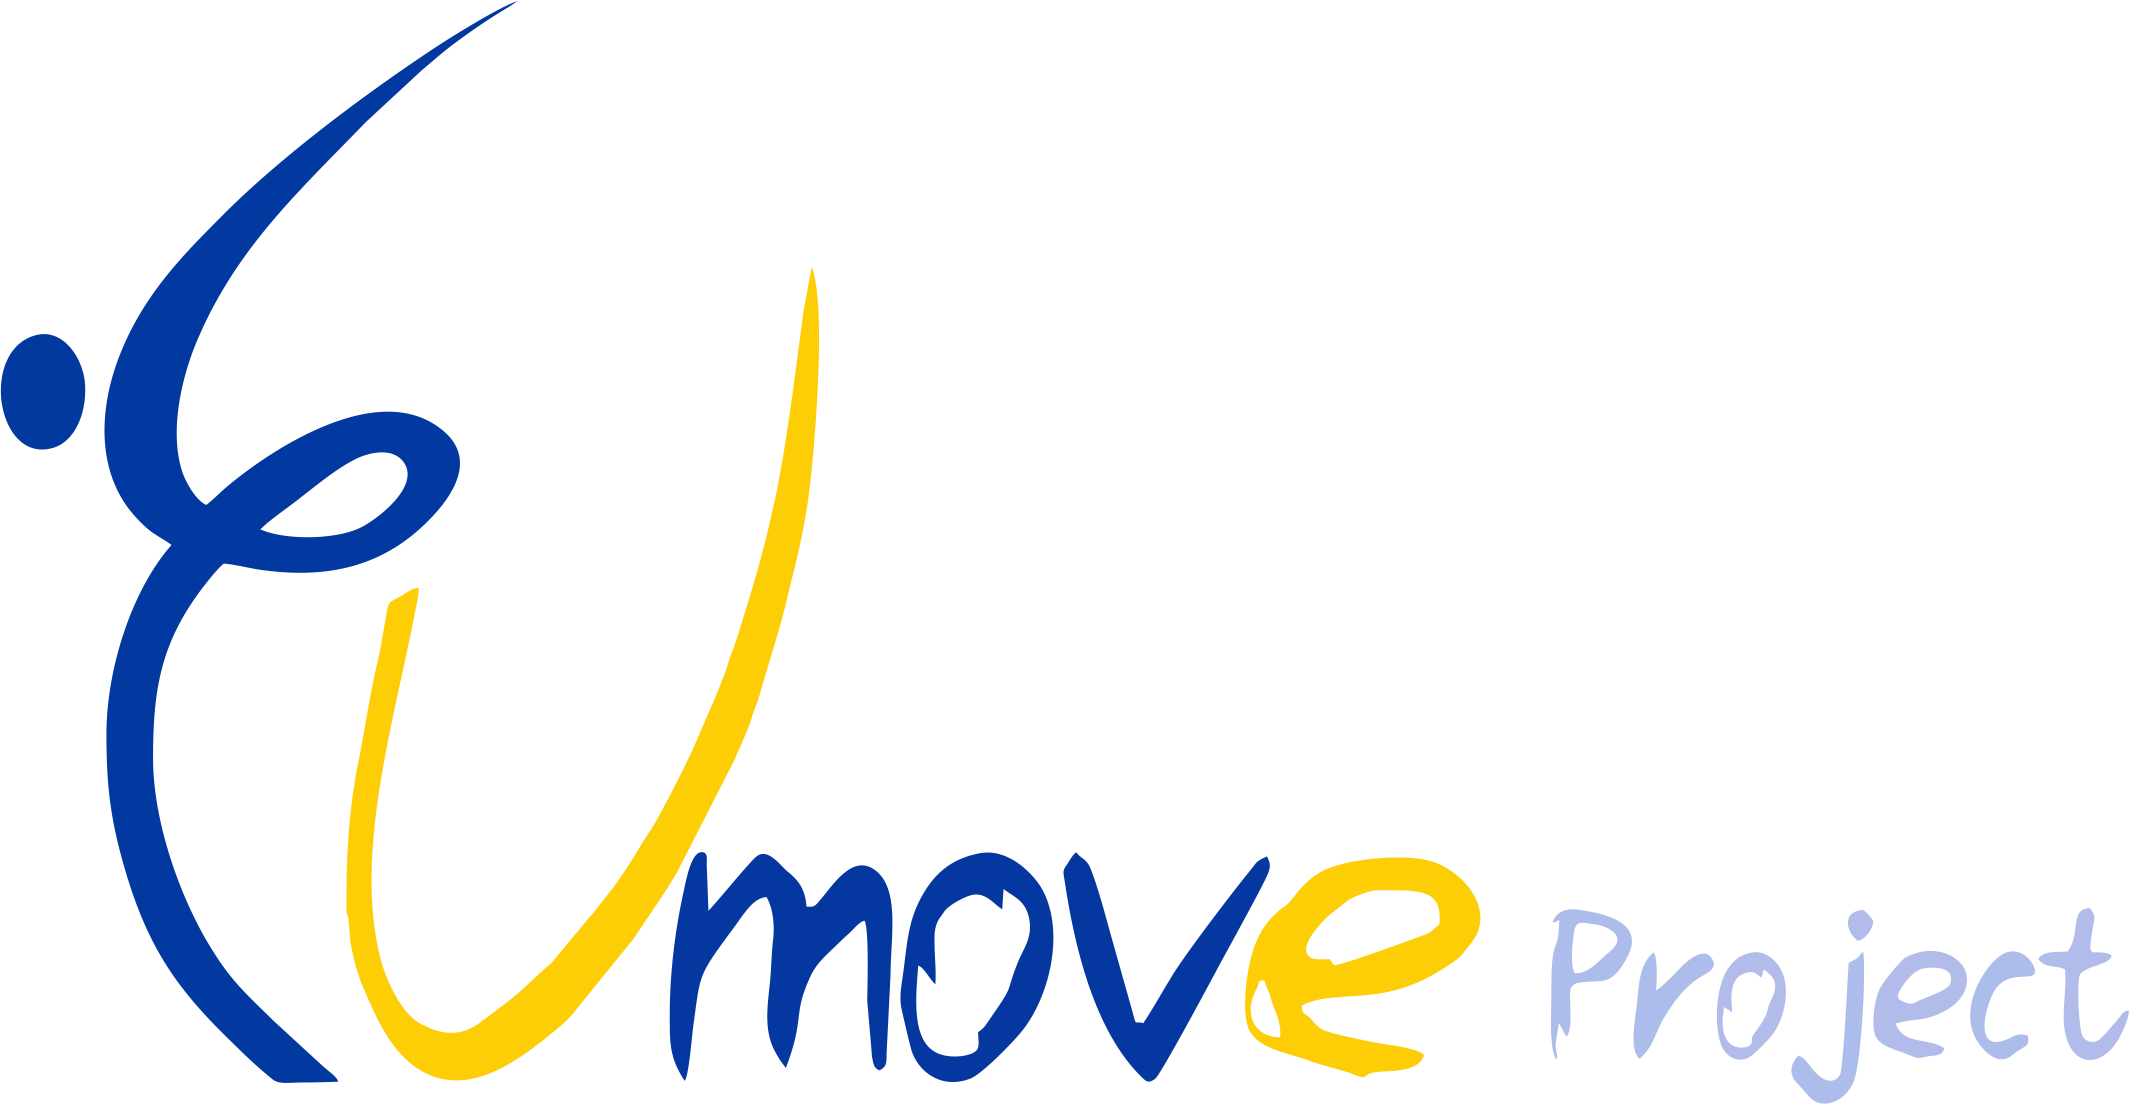 EU-MOVE – Premiazione online dei progetti degli studenti delle scuole superiori del Friuli Venezia Giulia